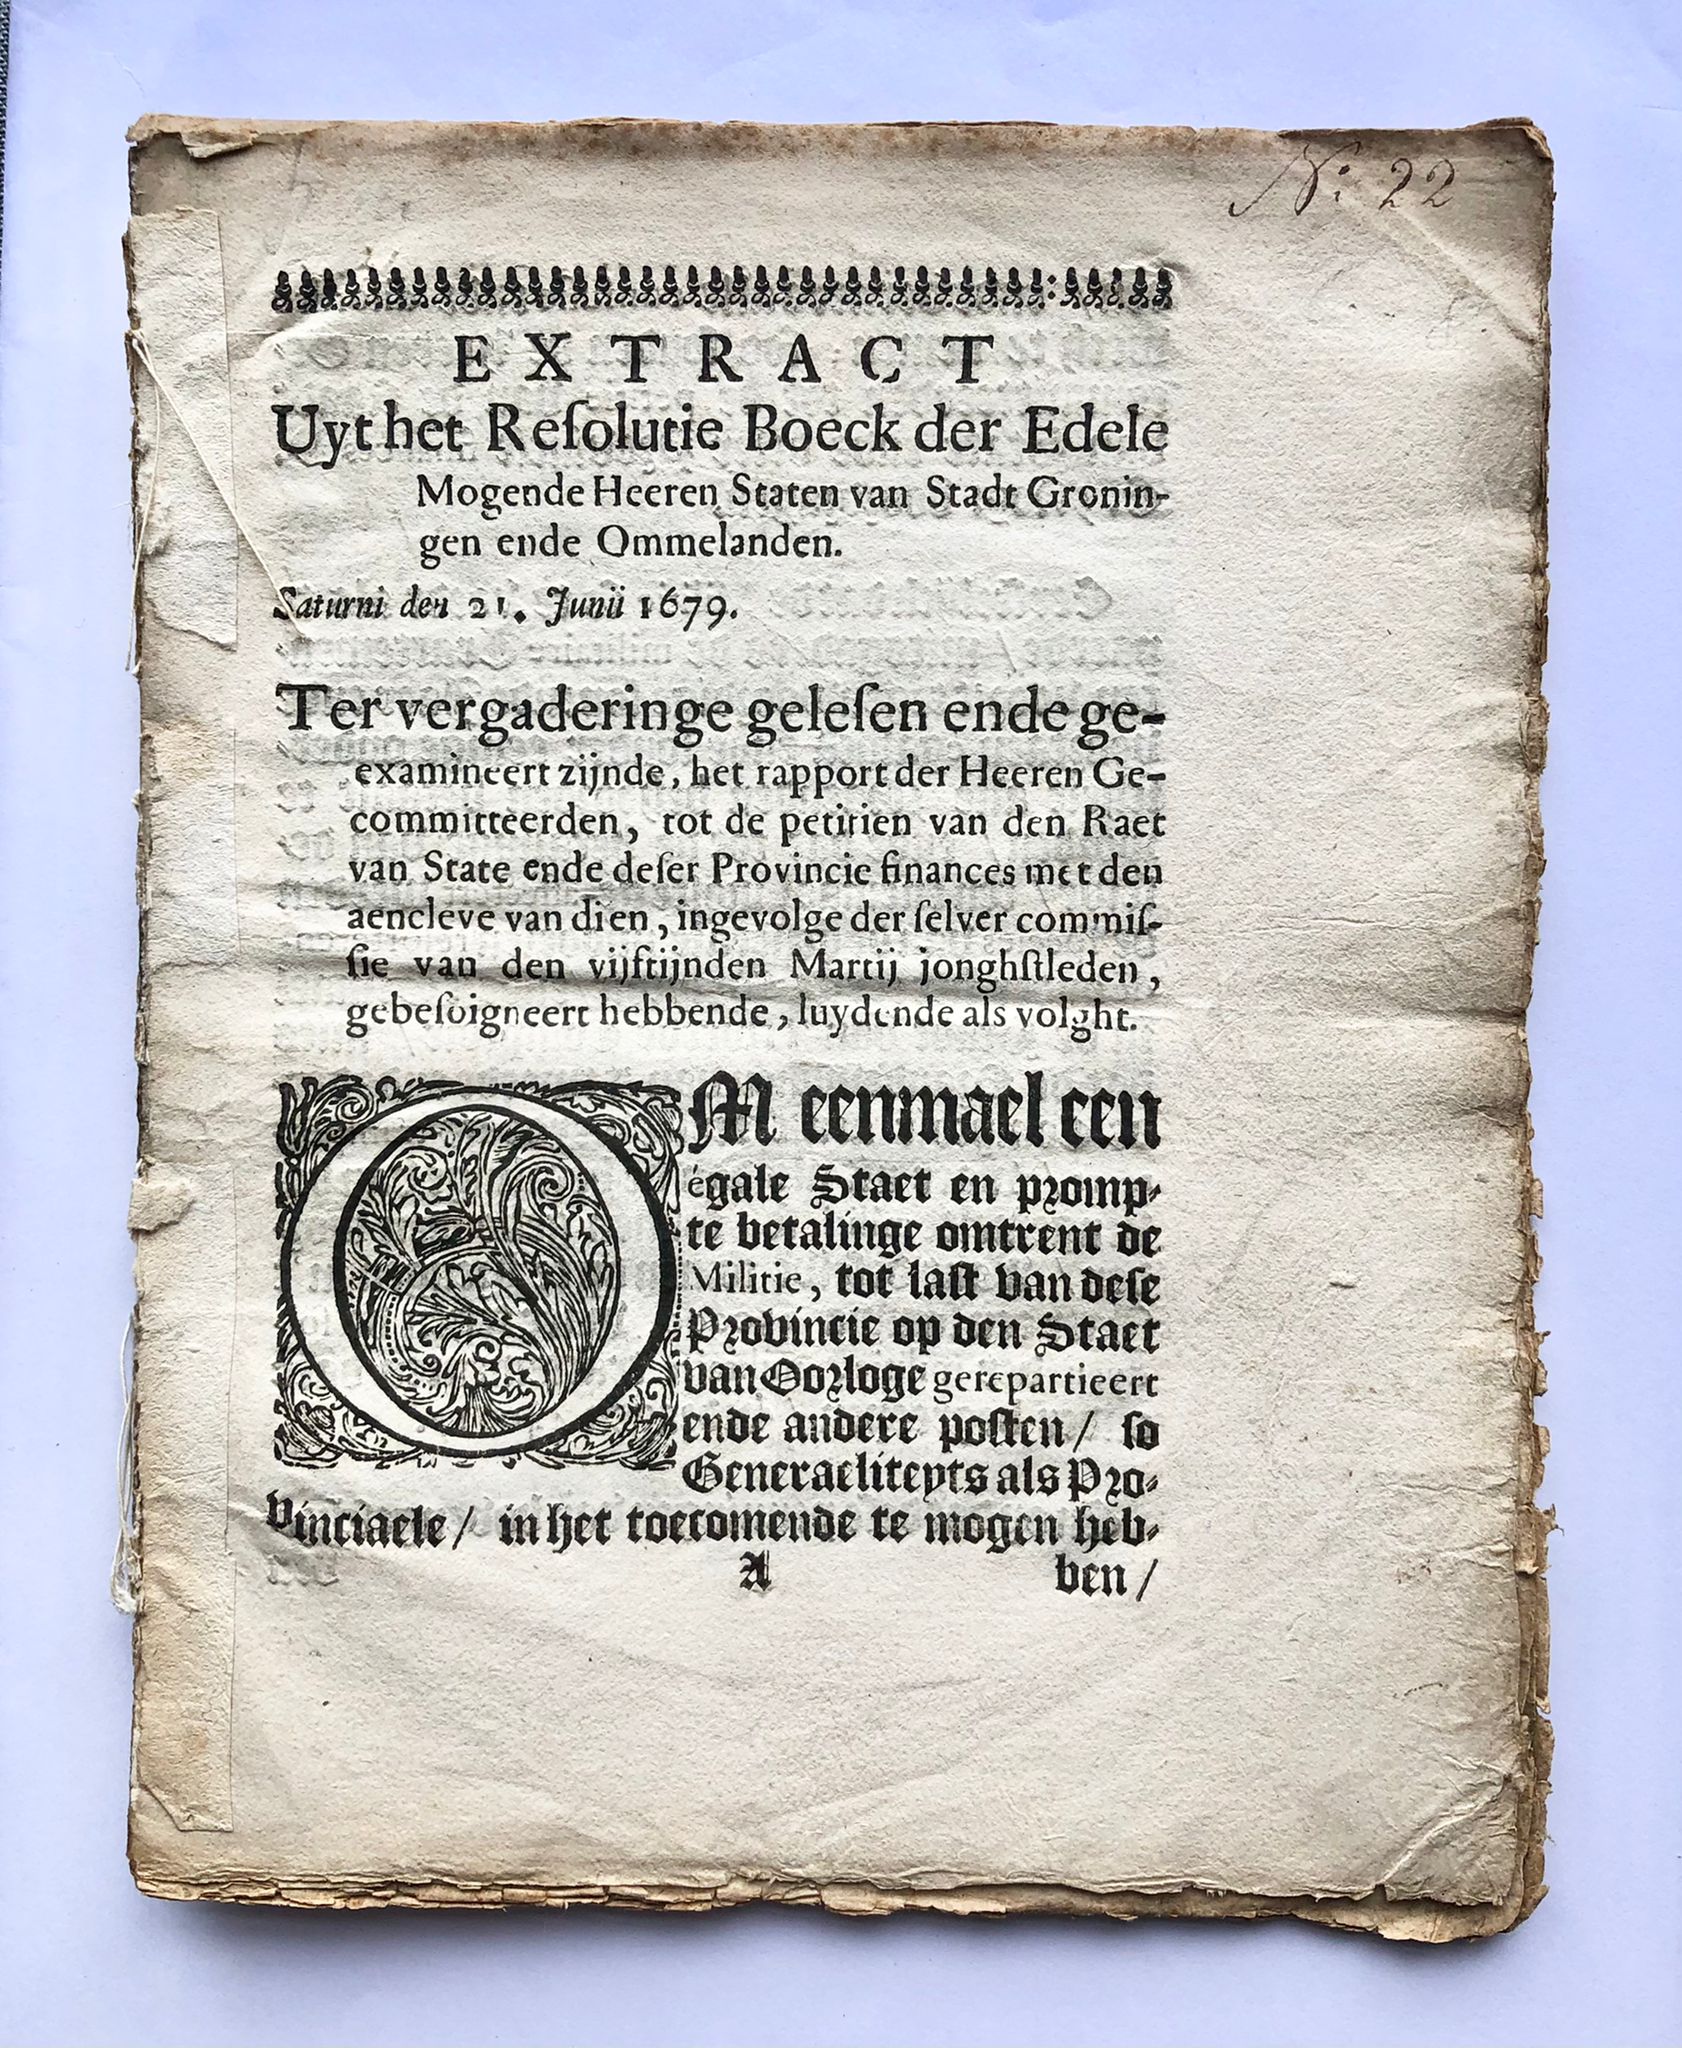 [Groningen, [1679]] Extract Uyt het Resolutie Boeck der Edele Mogende Heeren Staten van Stadt Groningen ende Ommelanden, Saturni den 21. Junii 1679, No. 22, [s.l., s.n. [1679], 18 pp.